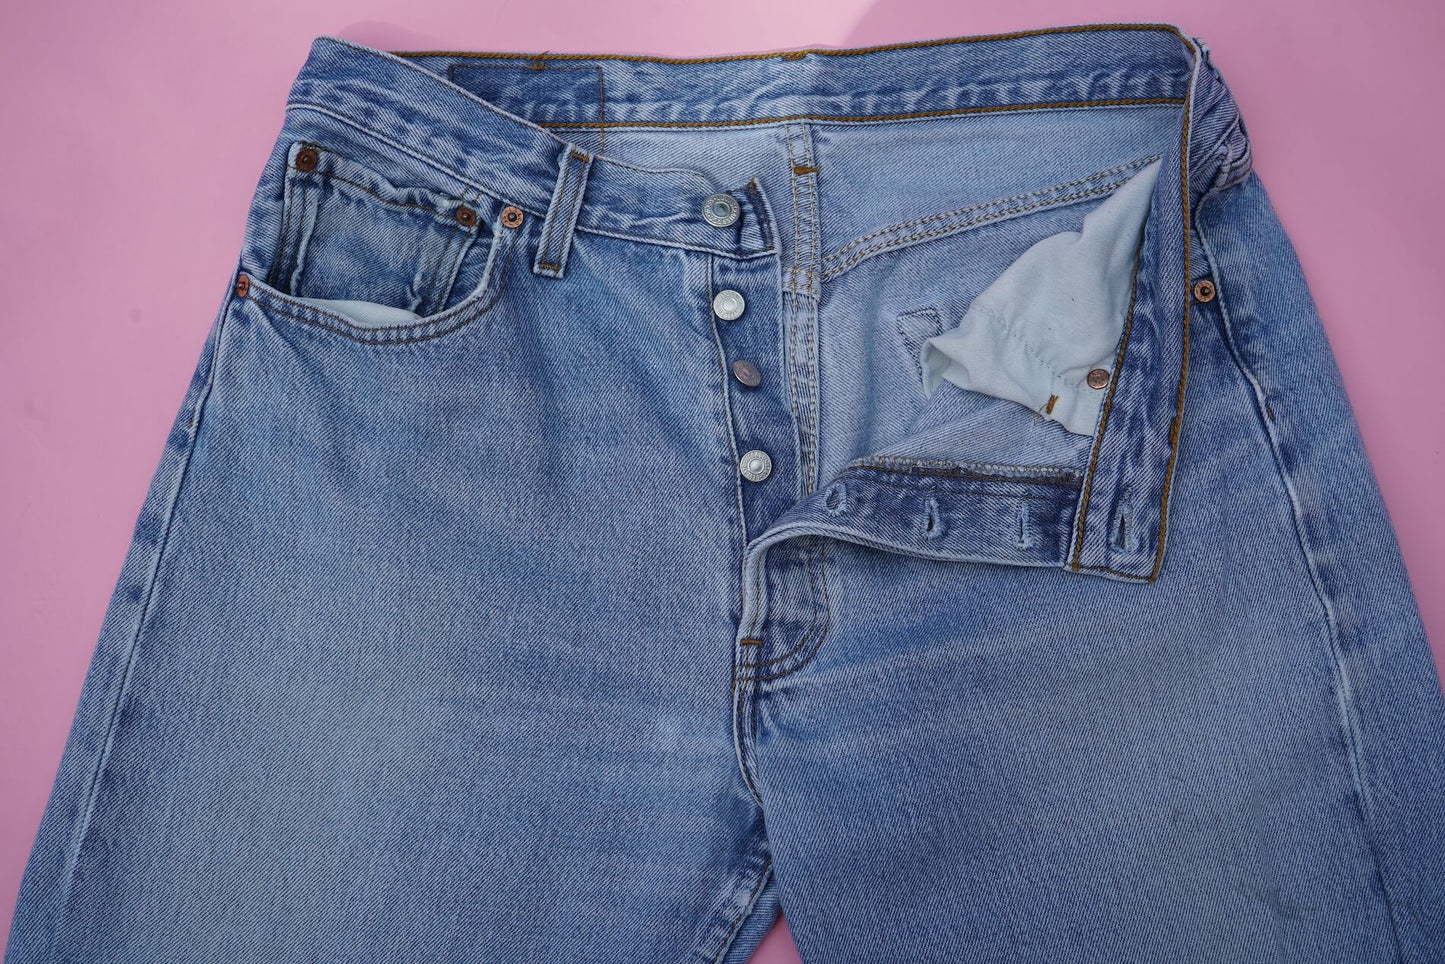 Vintage 90s Levi's 501 Jeans W33 Ankle Length Light Blue